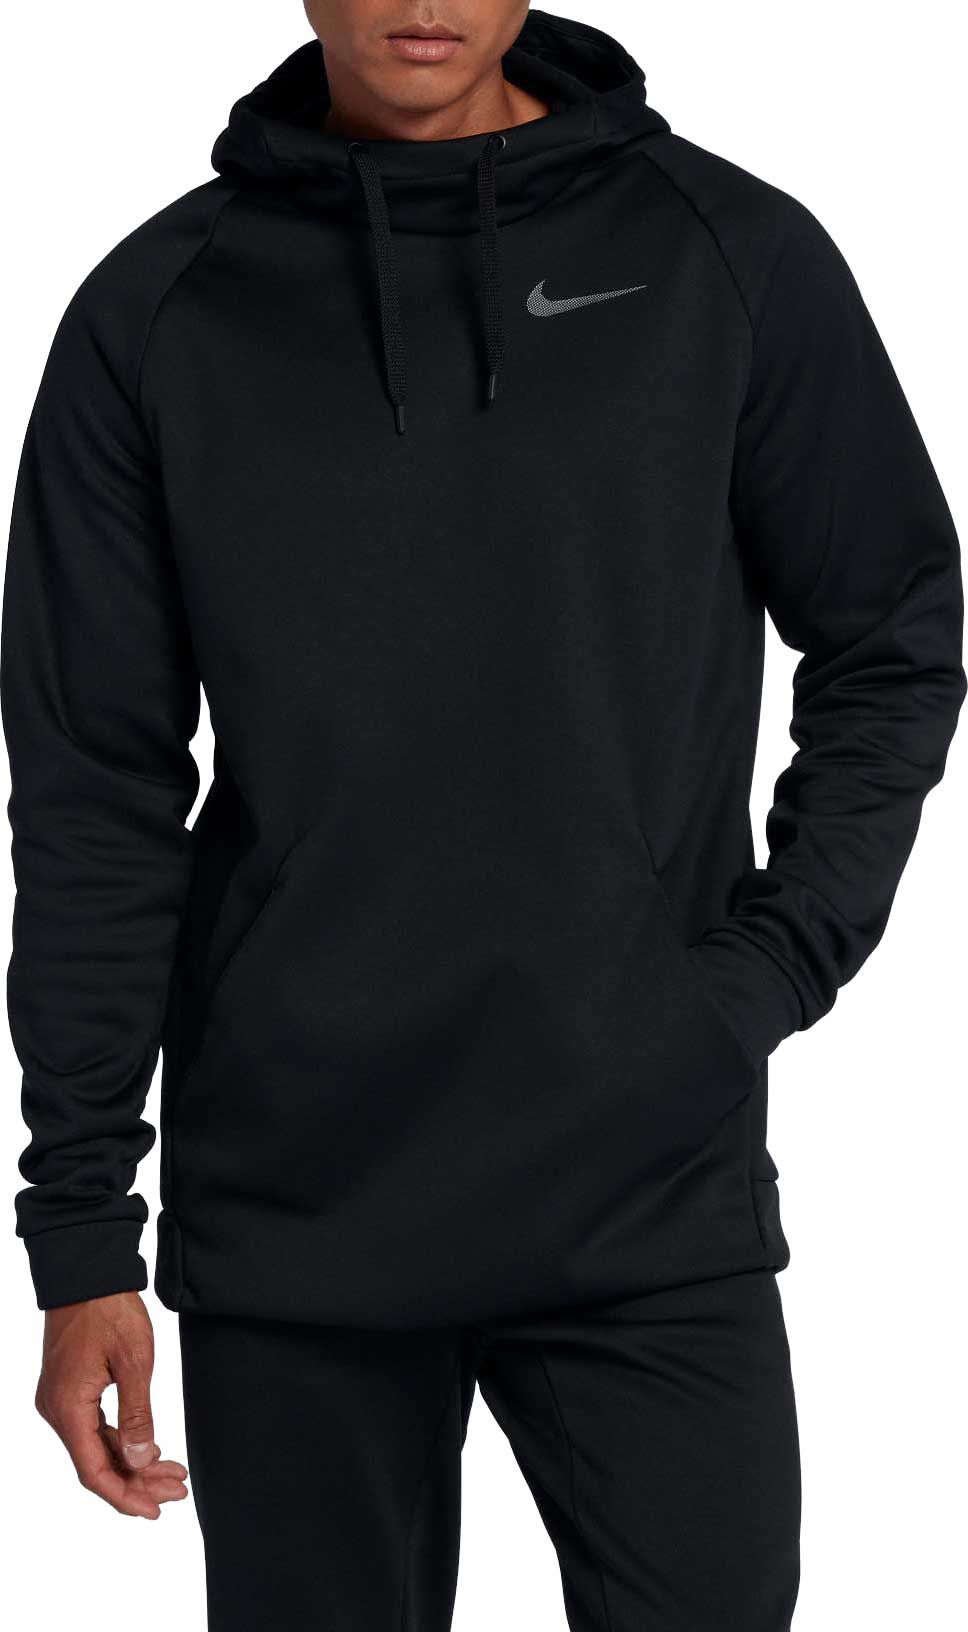 Men's Hoodies & Men's Sweatshirts | Best Price Guarantee at DICK'S